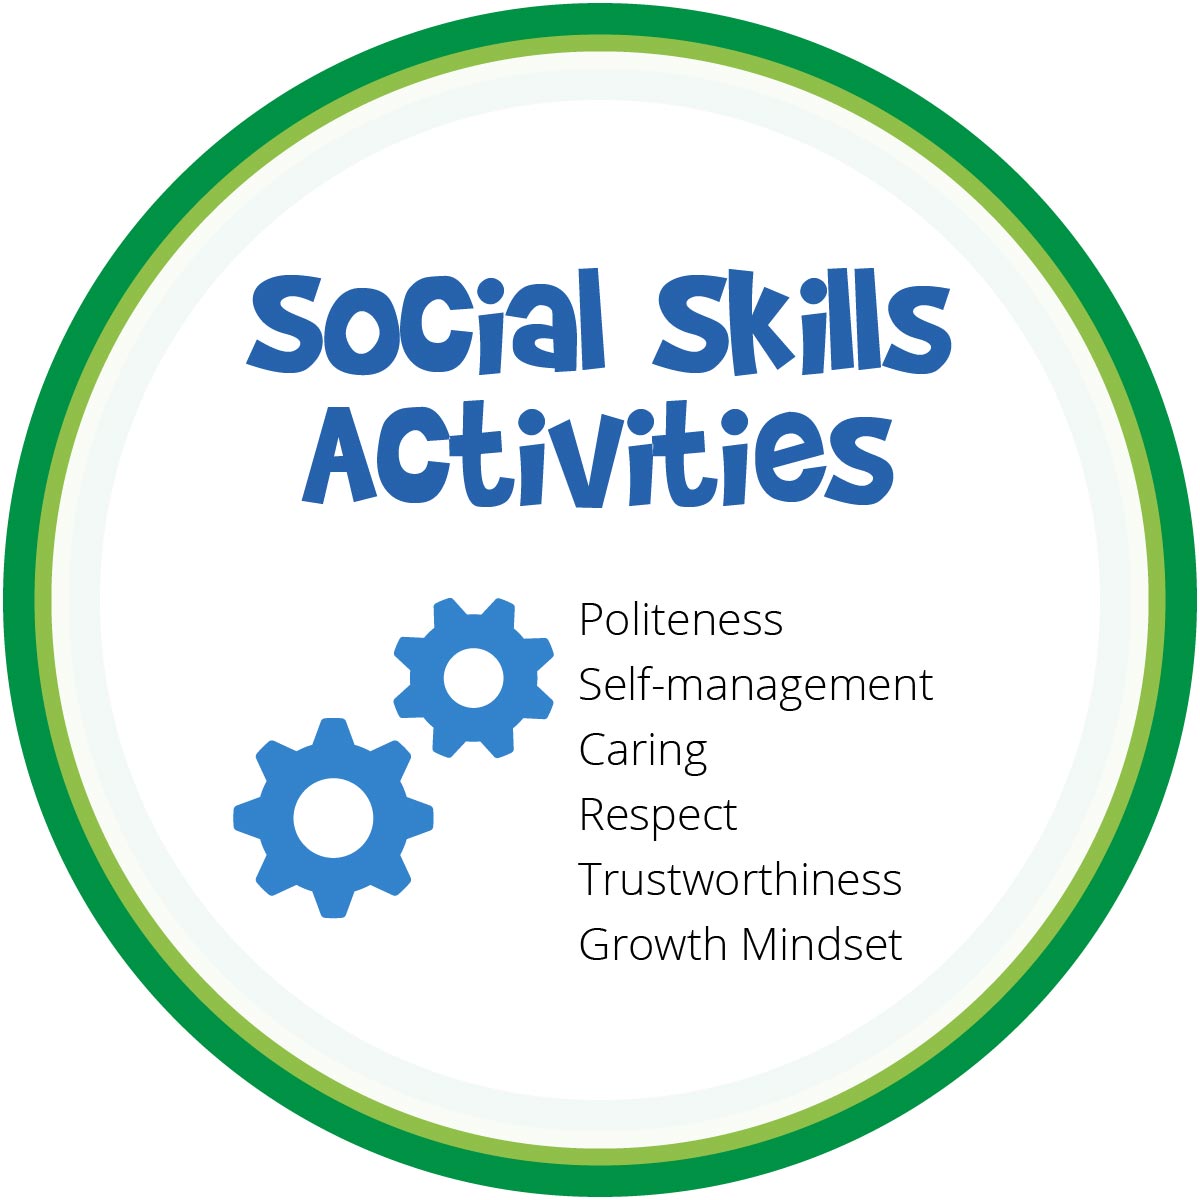 Free Social Skills activities for elementary Grades K-4